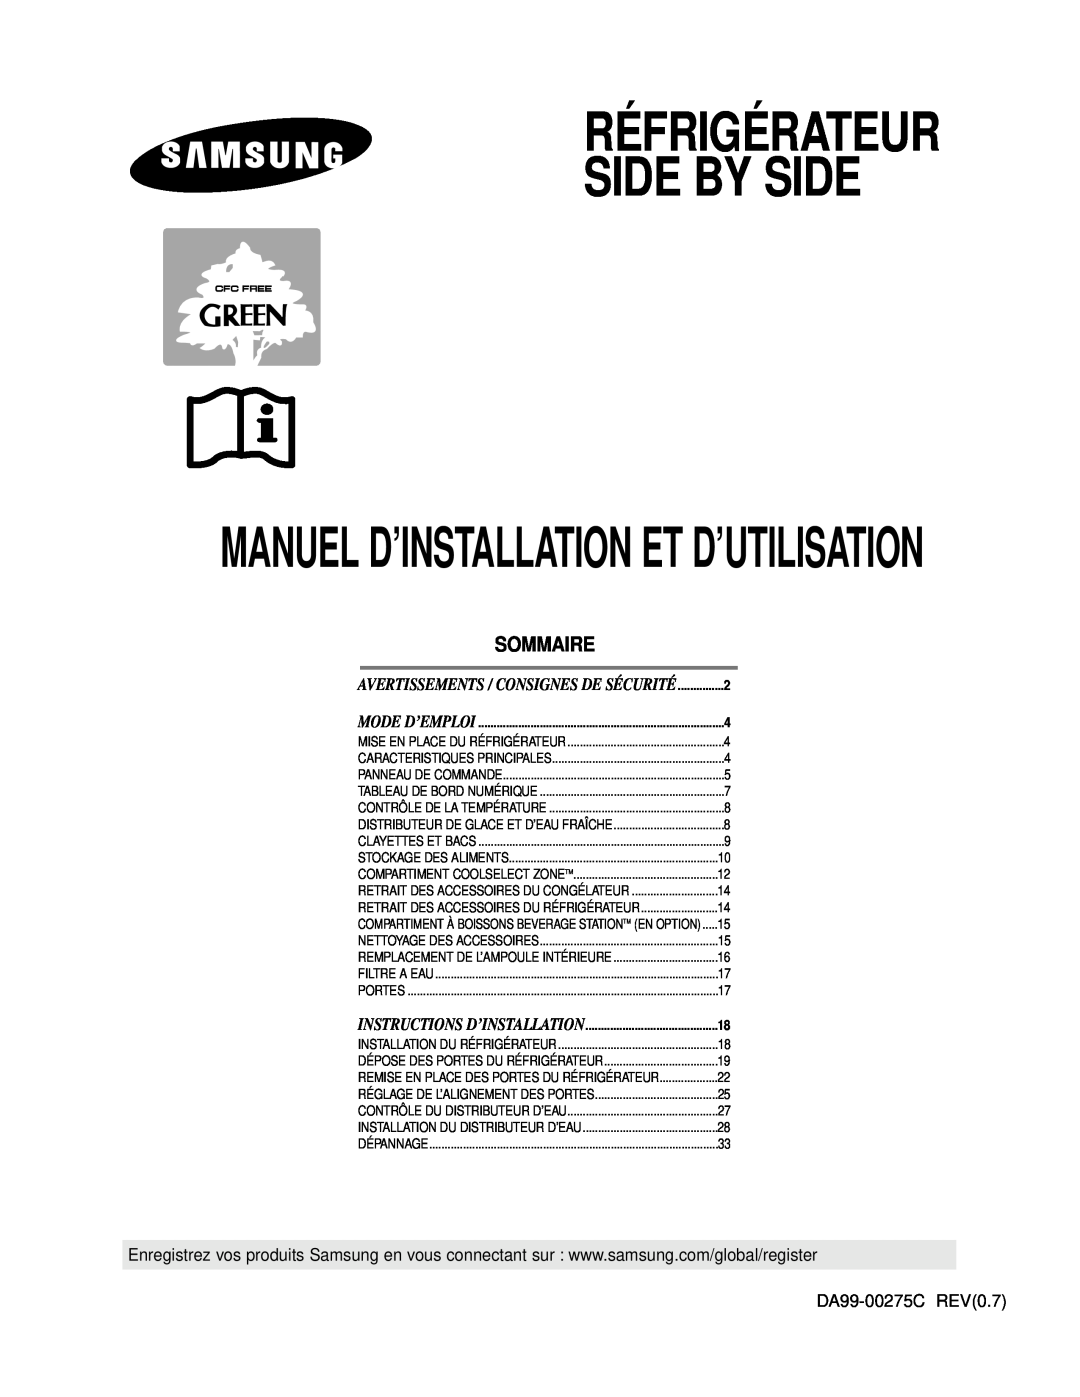 Samsung RS24KASW1/CAF manual Sommaire, Réfrigérateur Side By Side, Manuel D’Installation Et D’Utilisation, Mode D’Emploi 